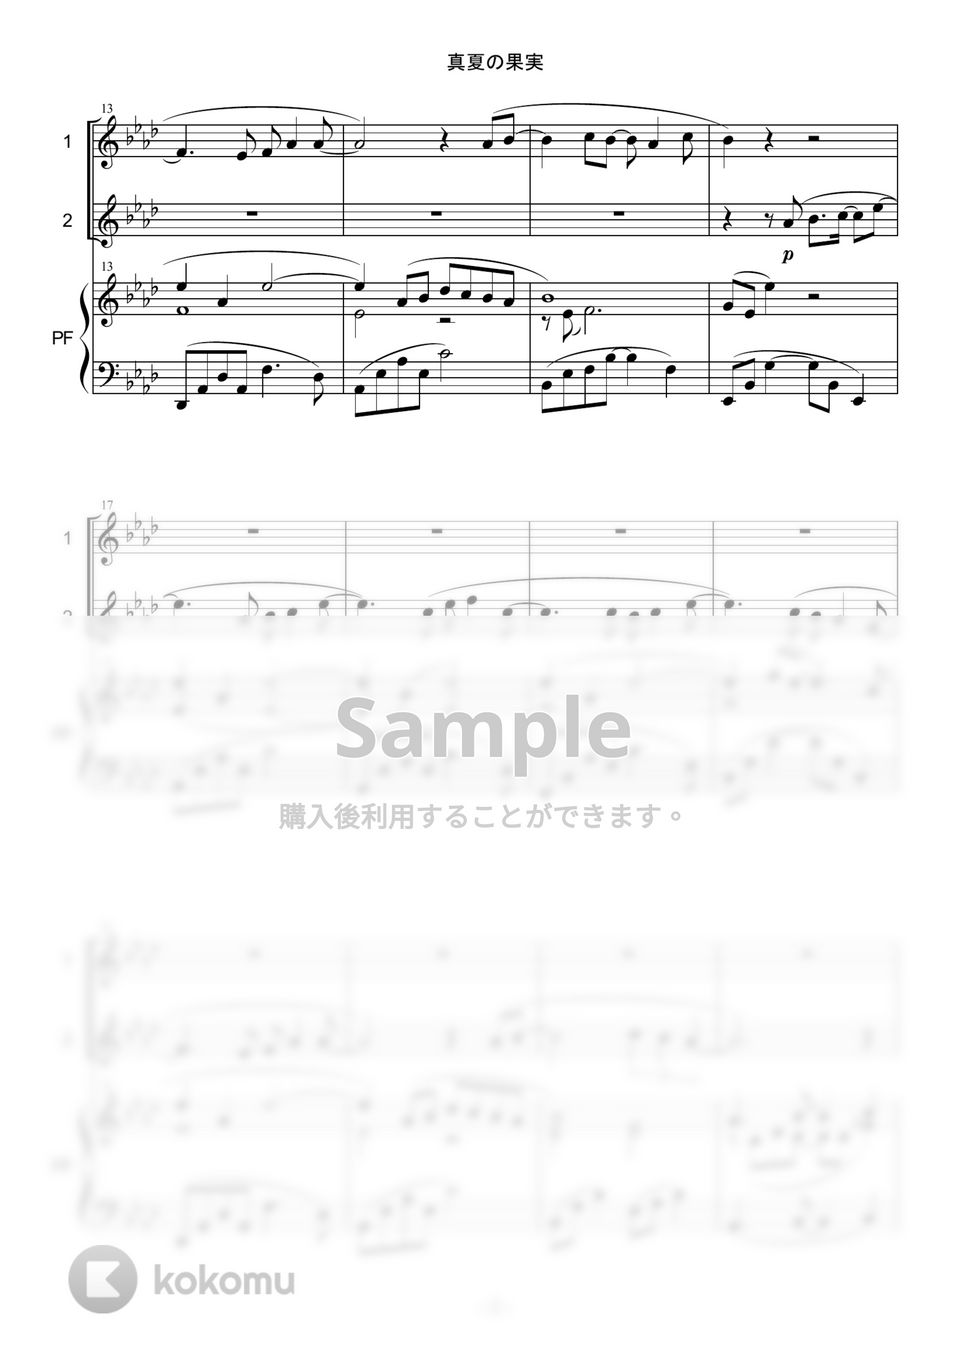 サザンオールスターズ - 真夏の果実 (in C/デュオ/フルート/オーボエ/ヴァイオリン/ピアノ伴奏) by enorisa